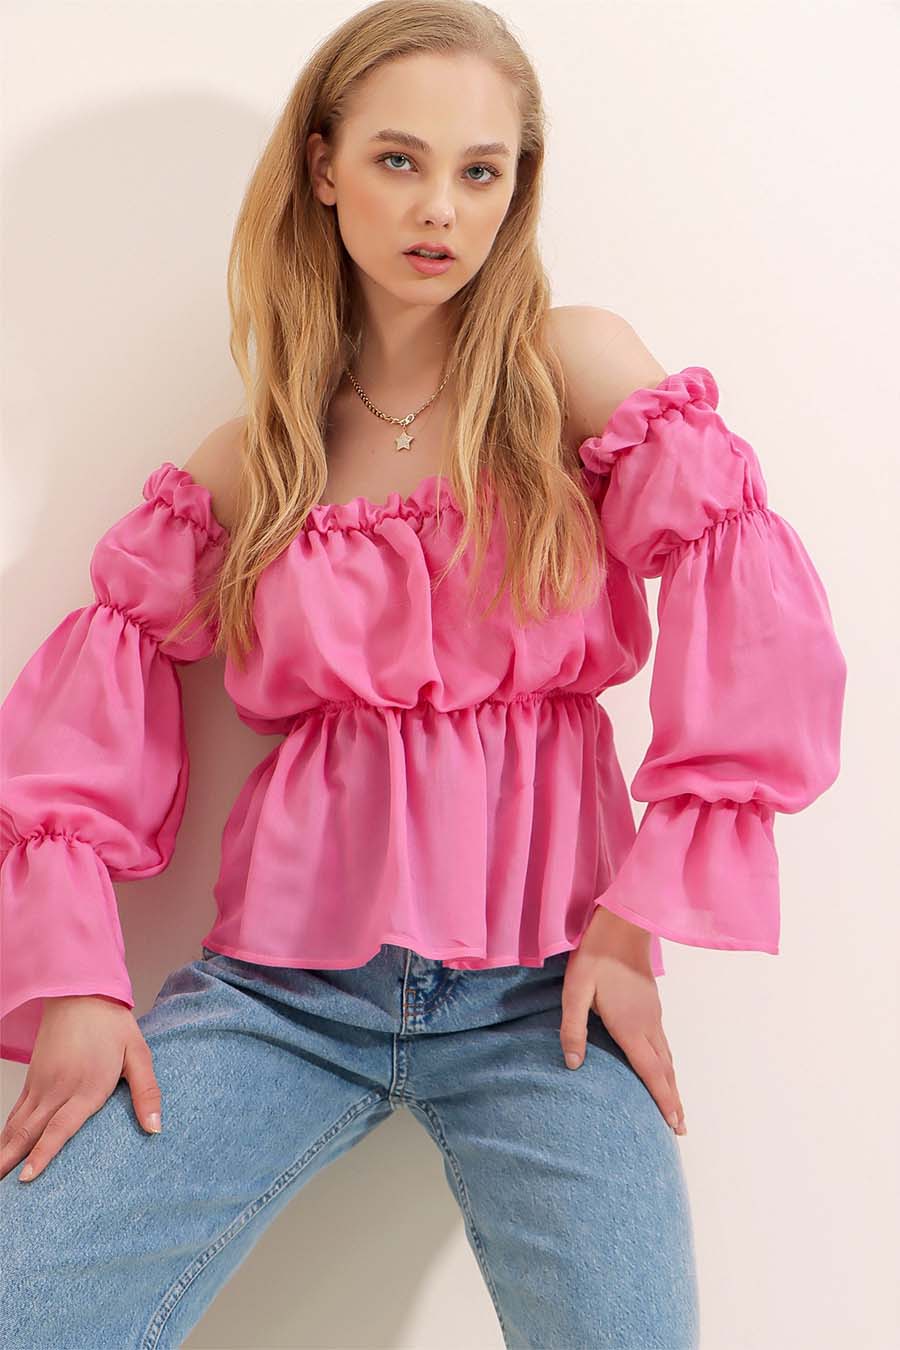 Дамска блуза Tina, Розов 4